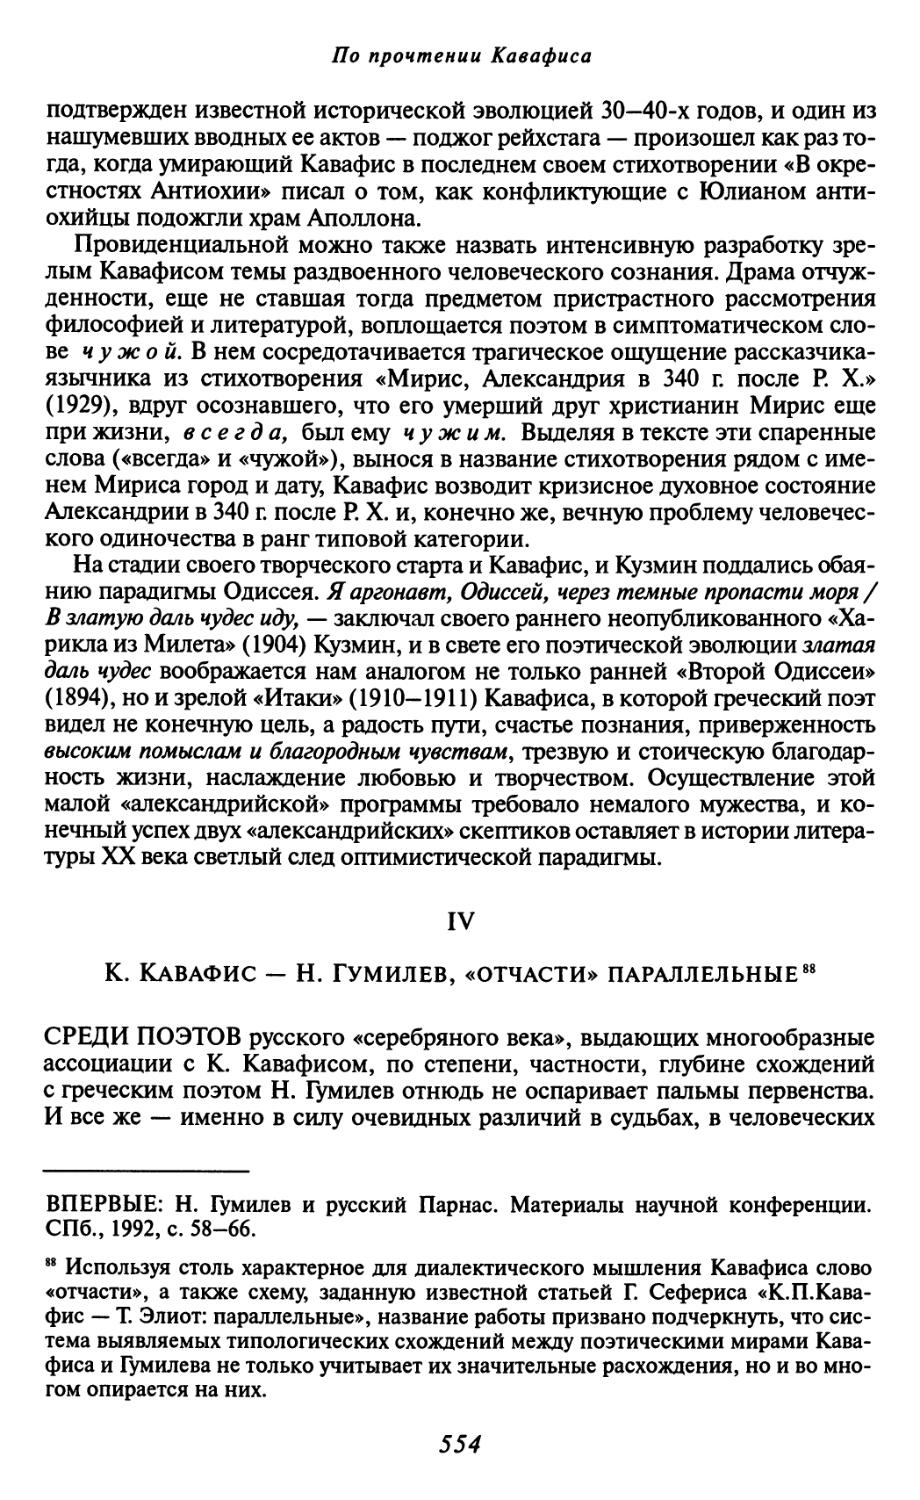 IV. К. Кавафис — Н. Гумилев, «отчасти» параллельные